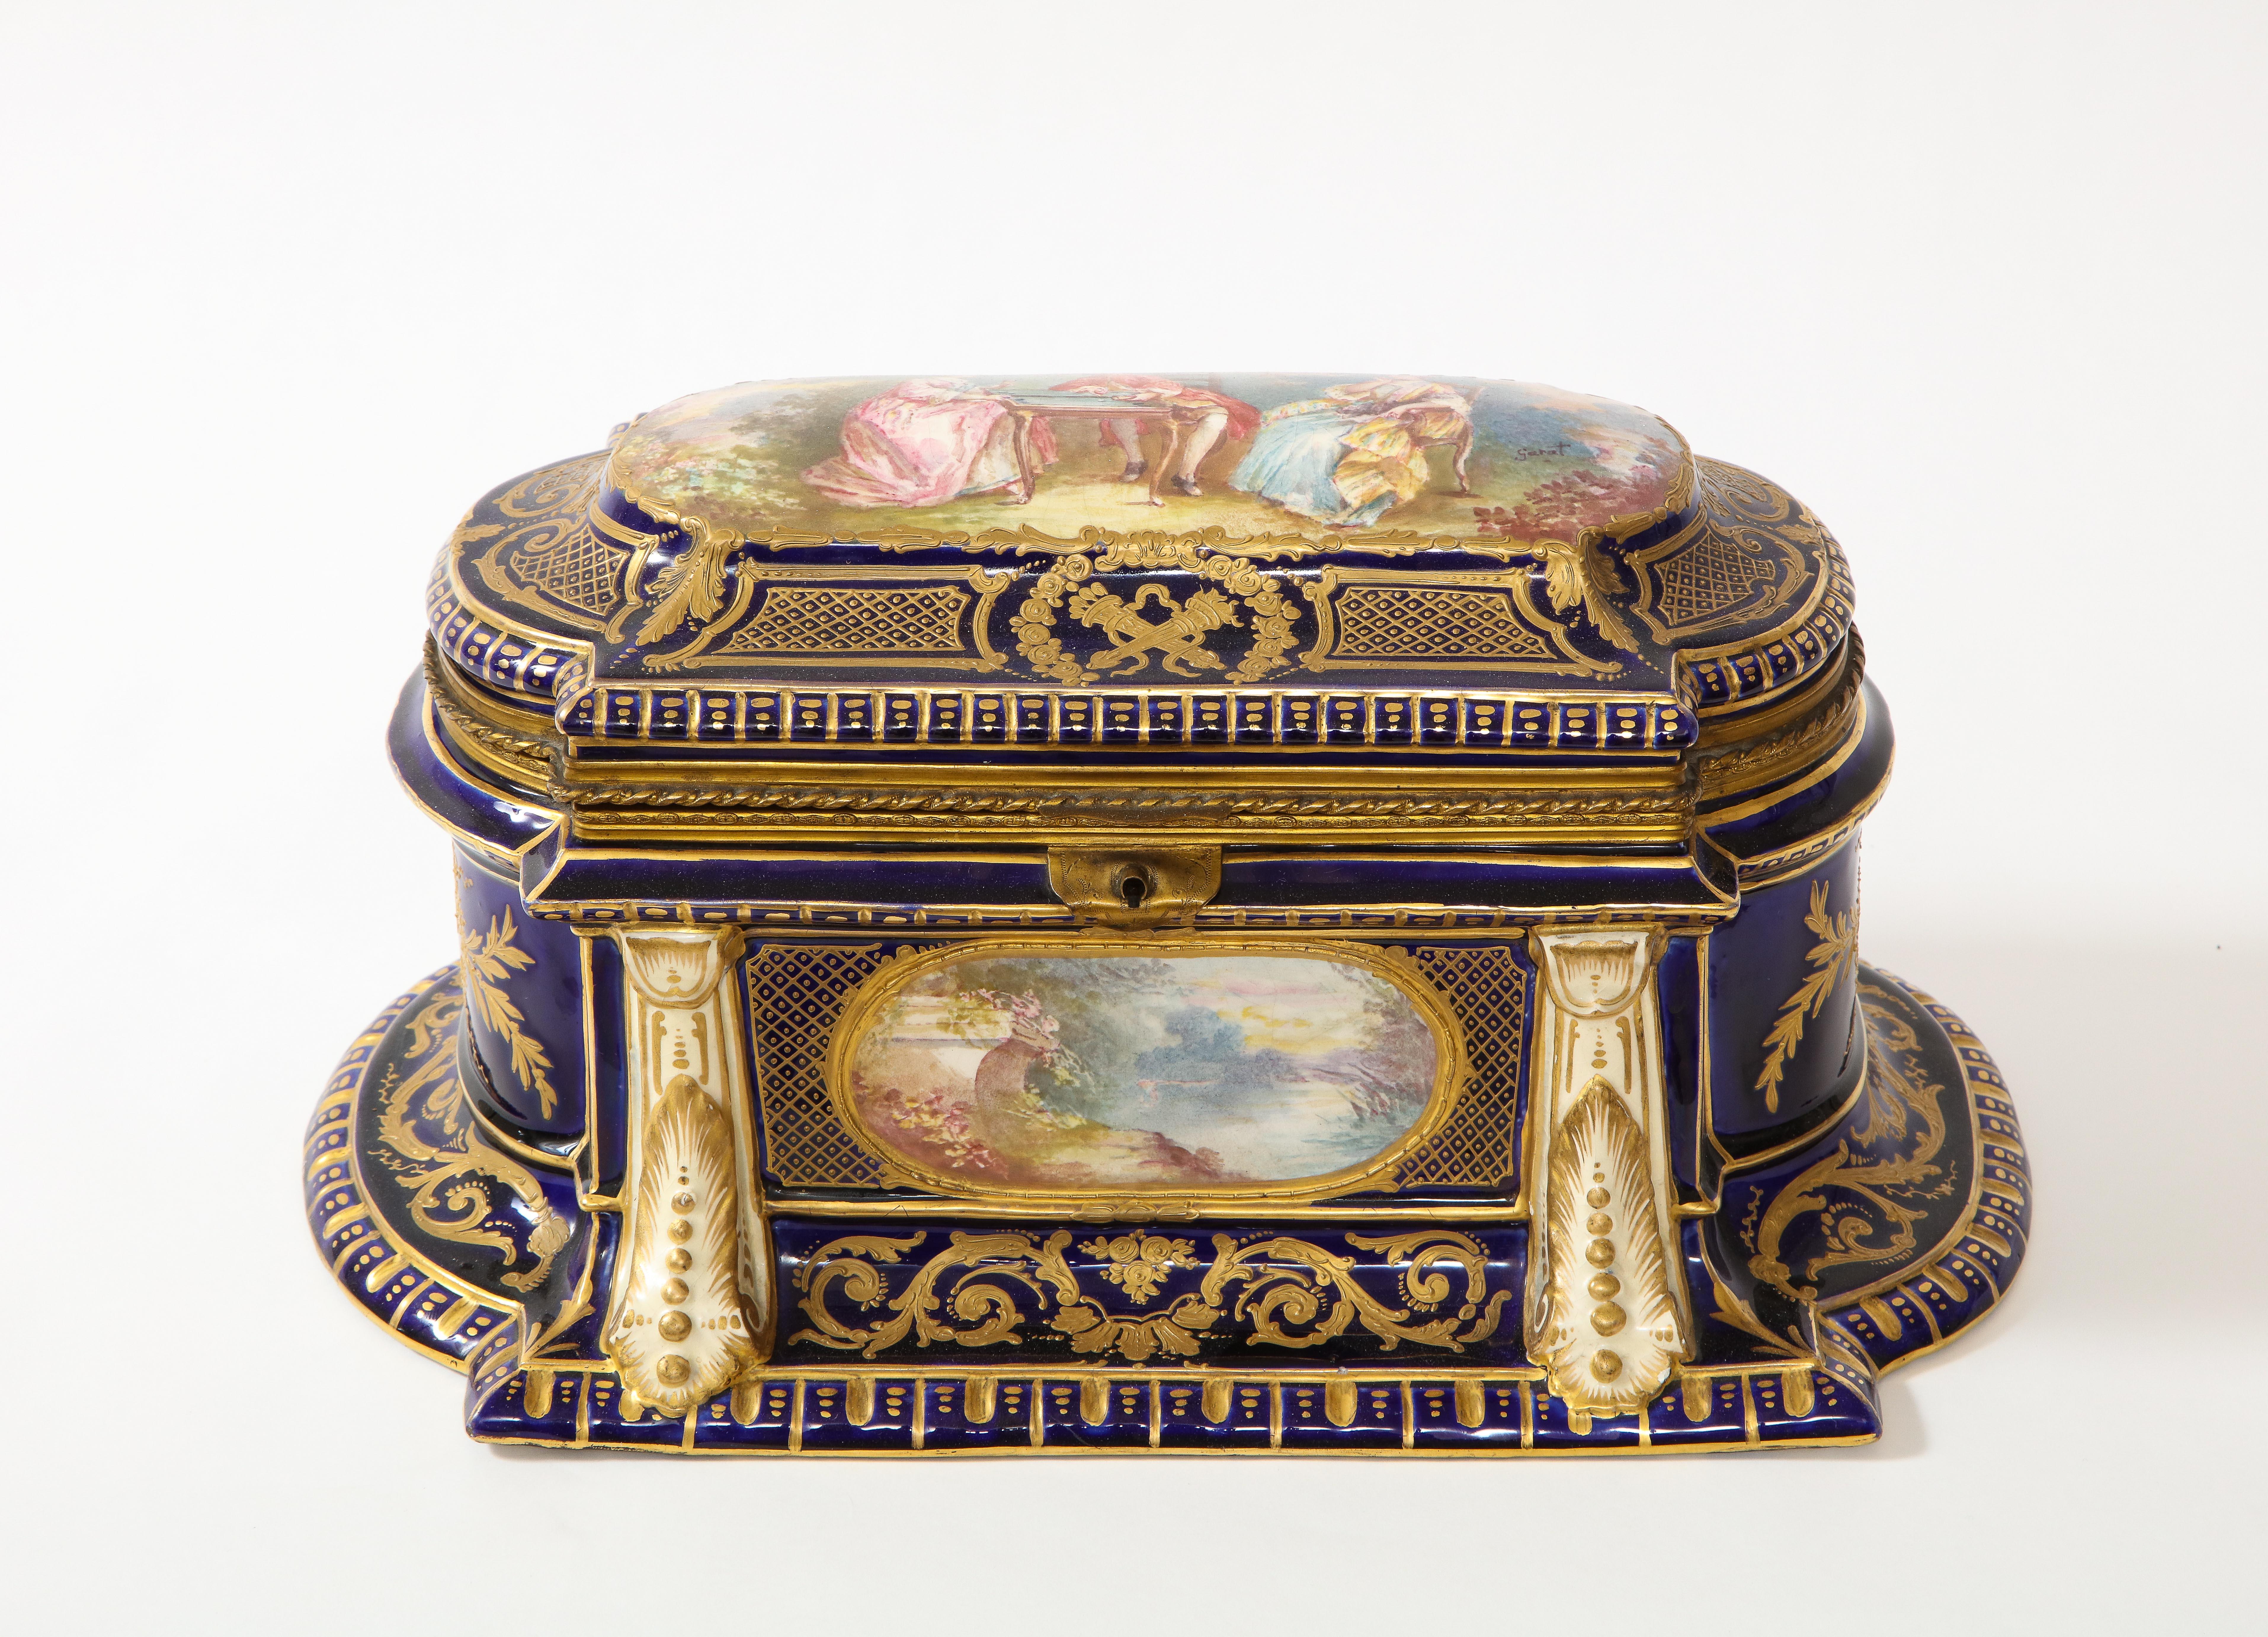 Une très grande et inhabituelle boîte à fond bleu cobalt de Sèvres, de style Louis XVI, montée en bronze doré, signée Sarat. Cette boîte est un véritable chef-d'œuvre. Les boîtes de Sèvres, comme celle-ci, sont très inhabituelles en raison de leur